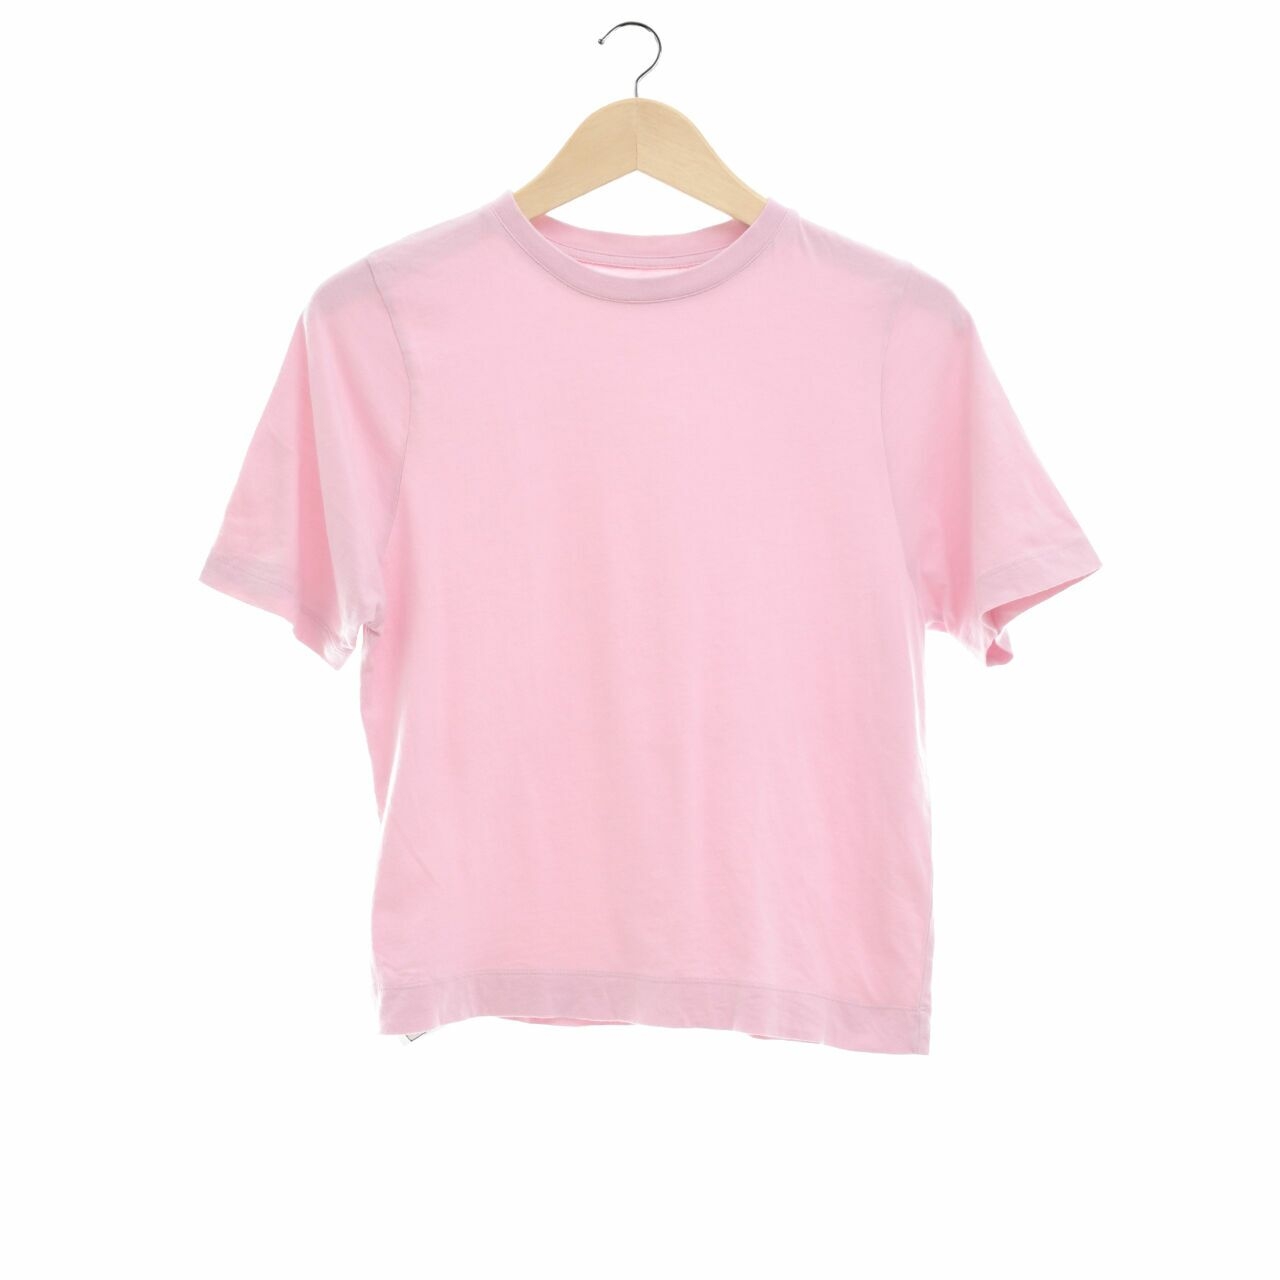 Alowalo Pink T-Shirt